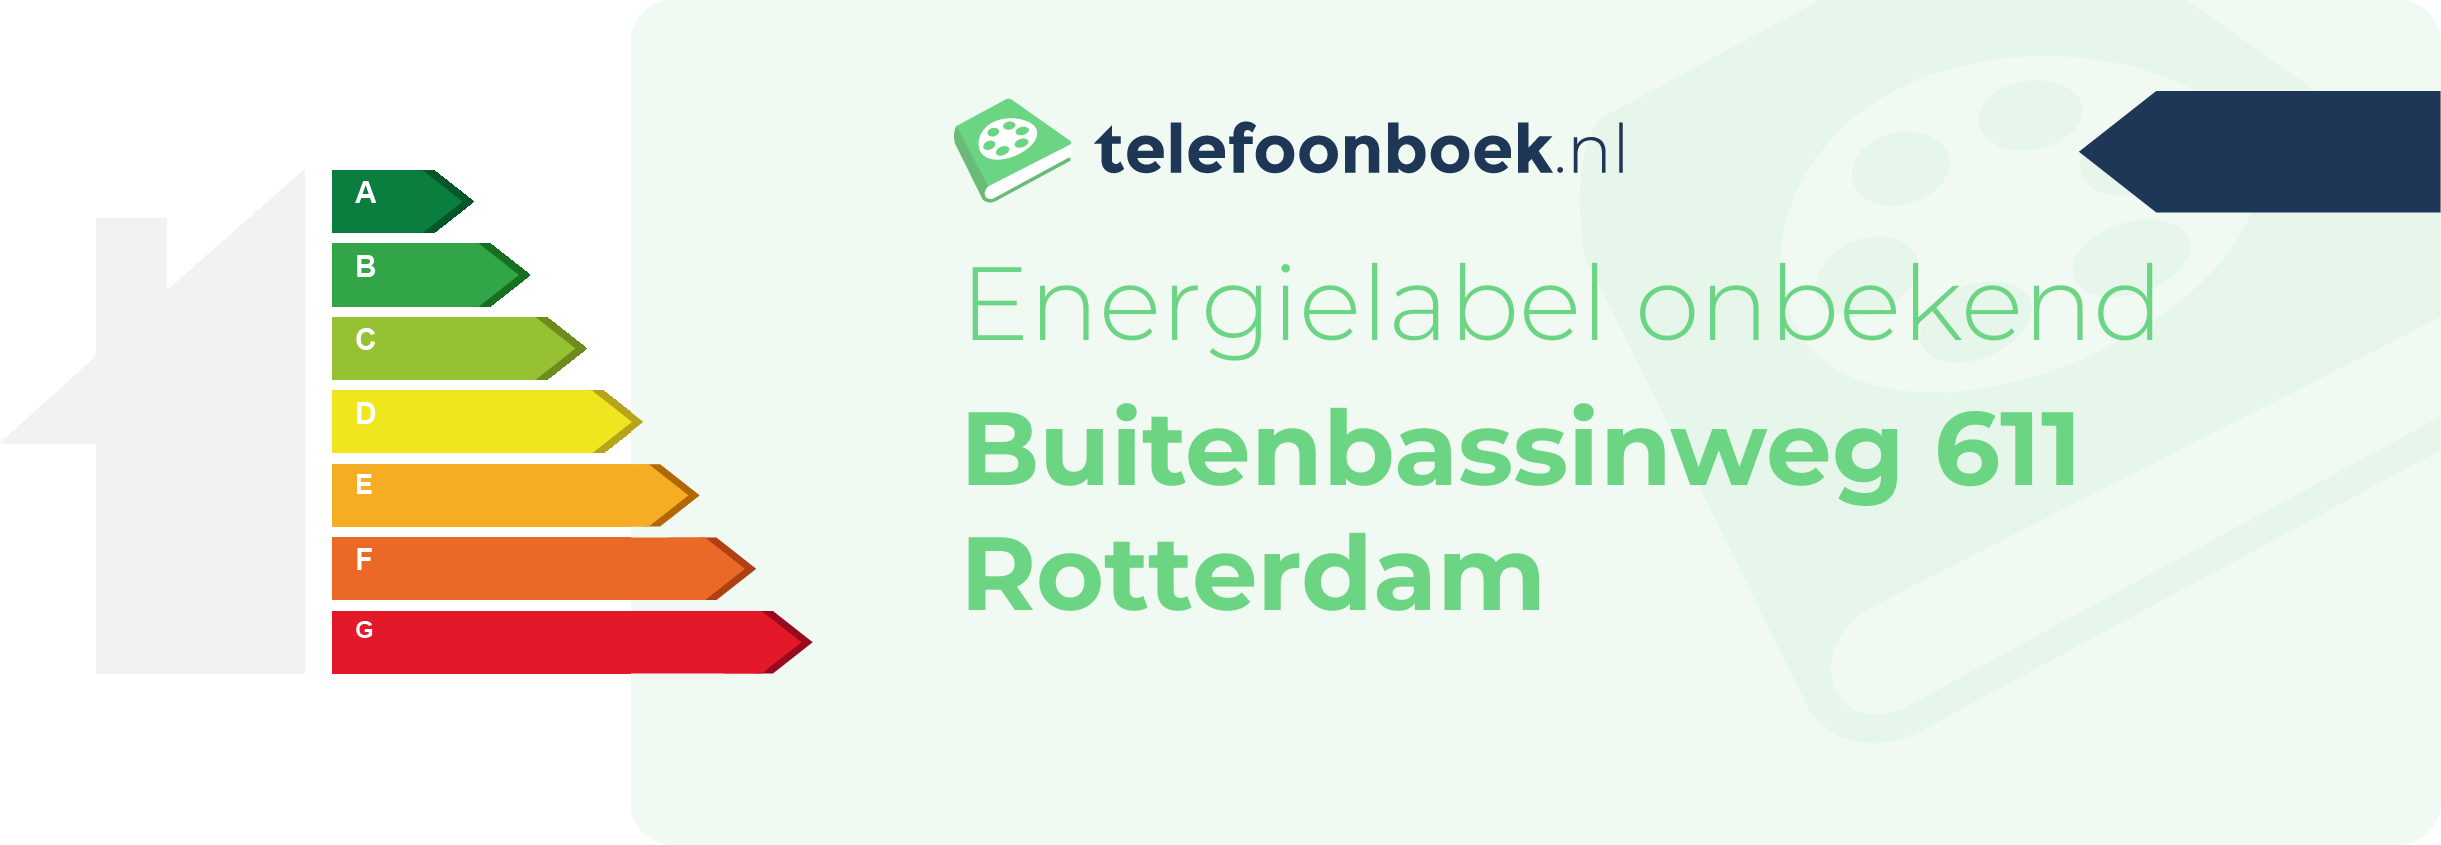 Energielabel Buitenbassinweg 611 Rotterdam